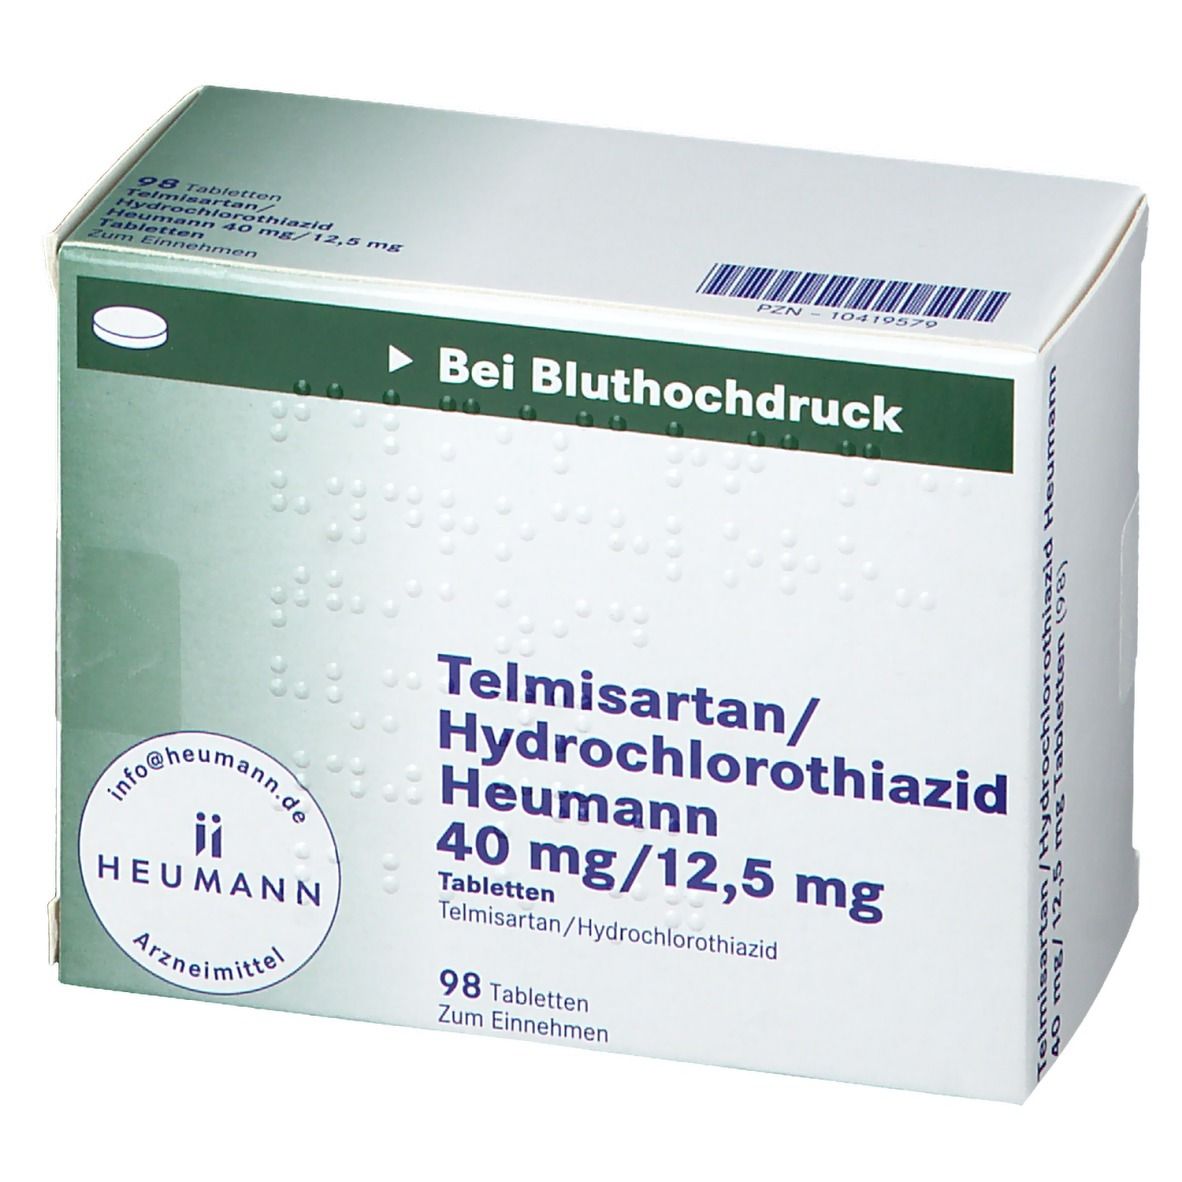 Telmisartan/Hydrochlorothiazid Heumann 40 mg/12,5 mg